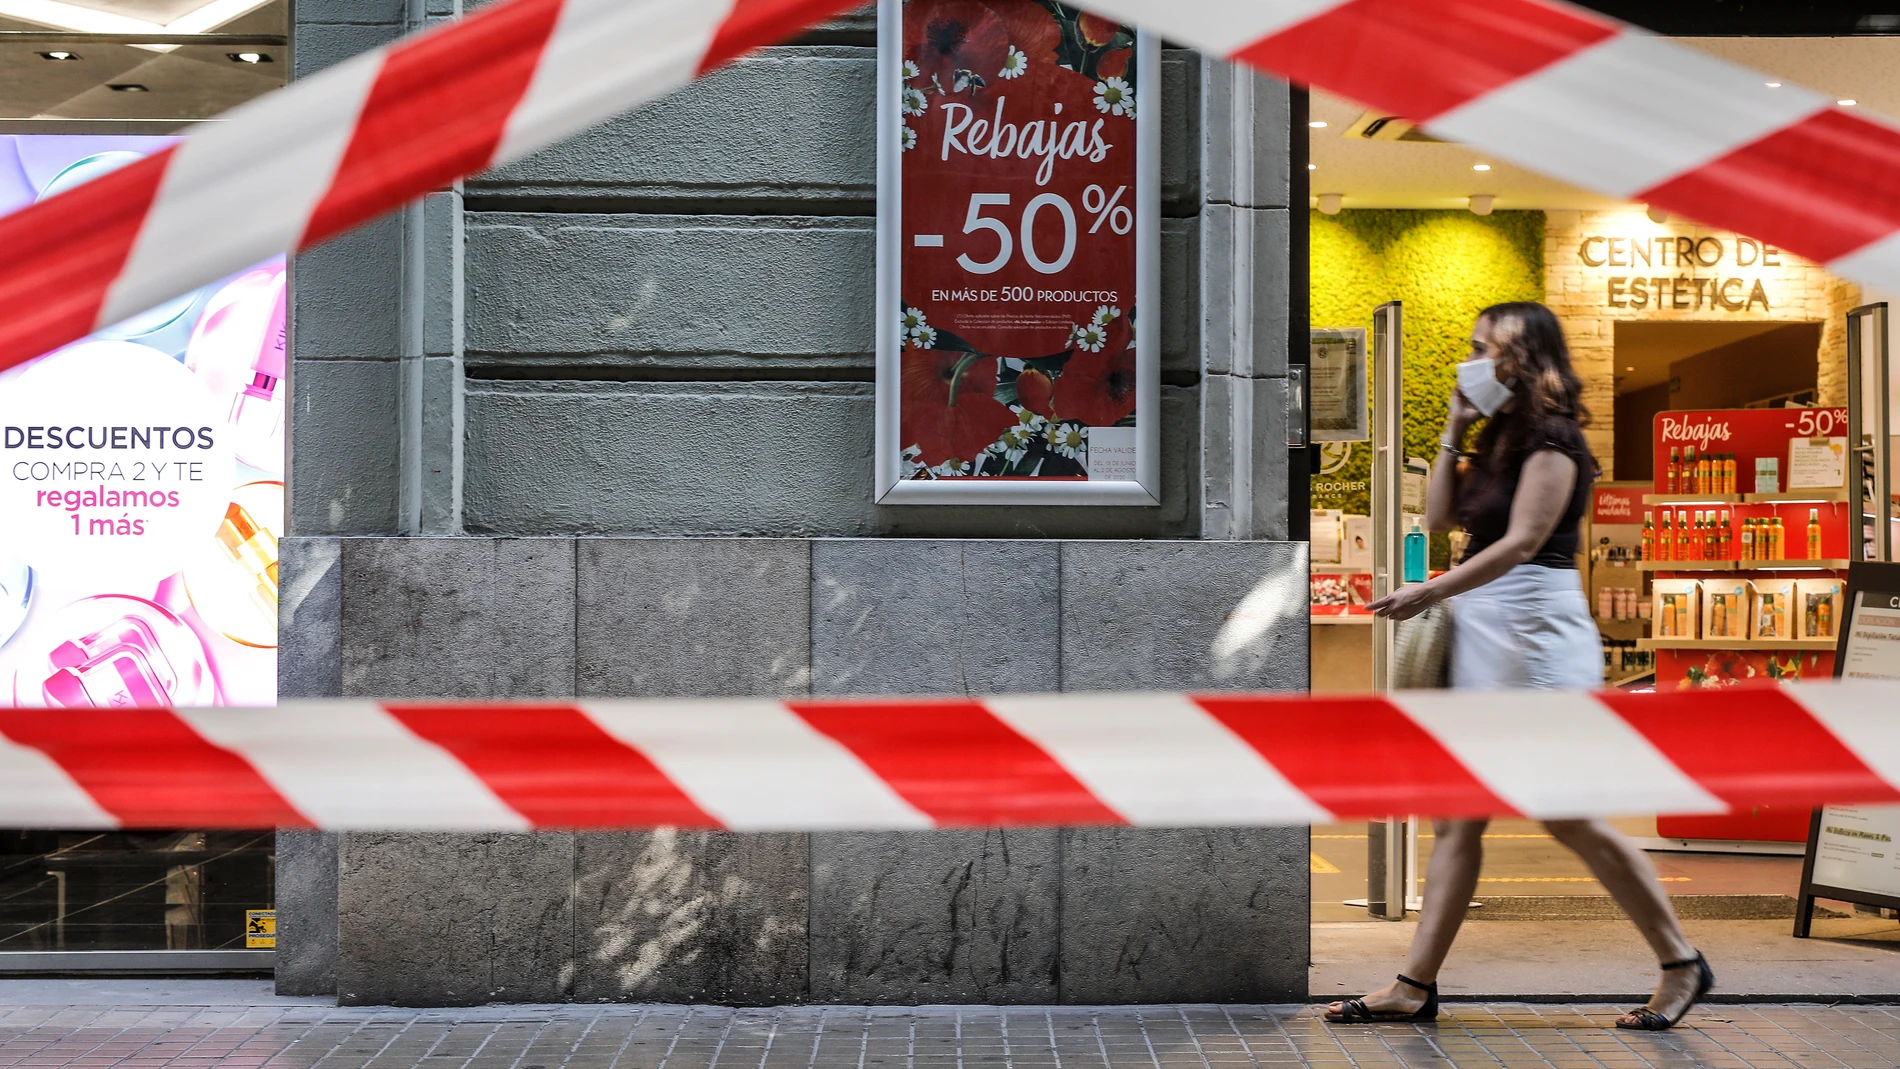 El 61% de los consumidores gastará 129 euros de media en las rebajas de verano